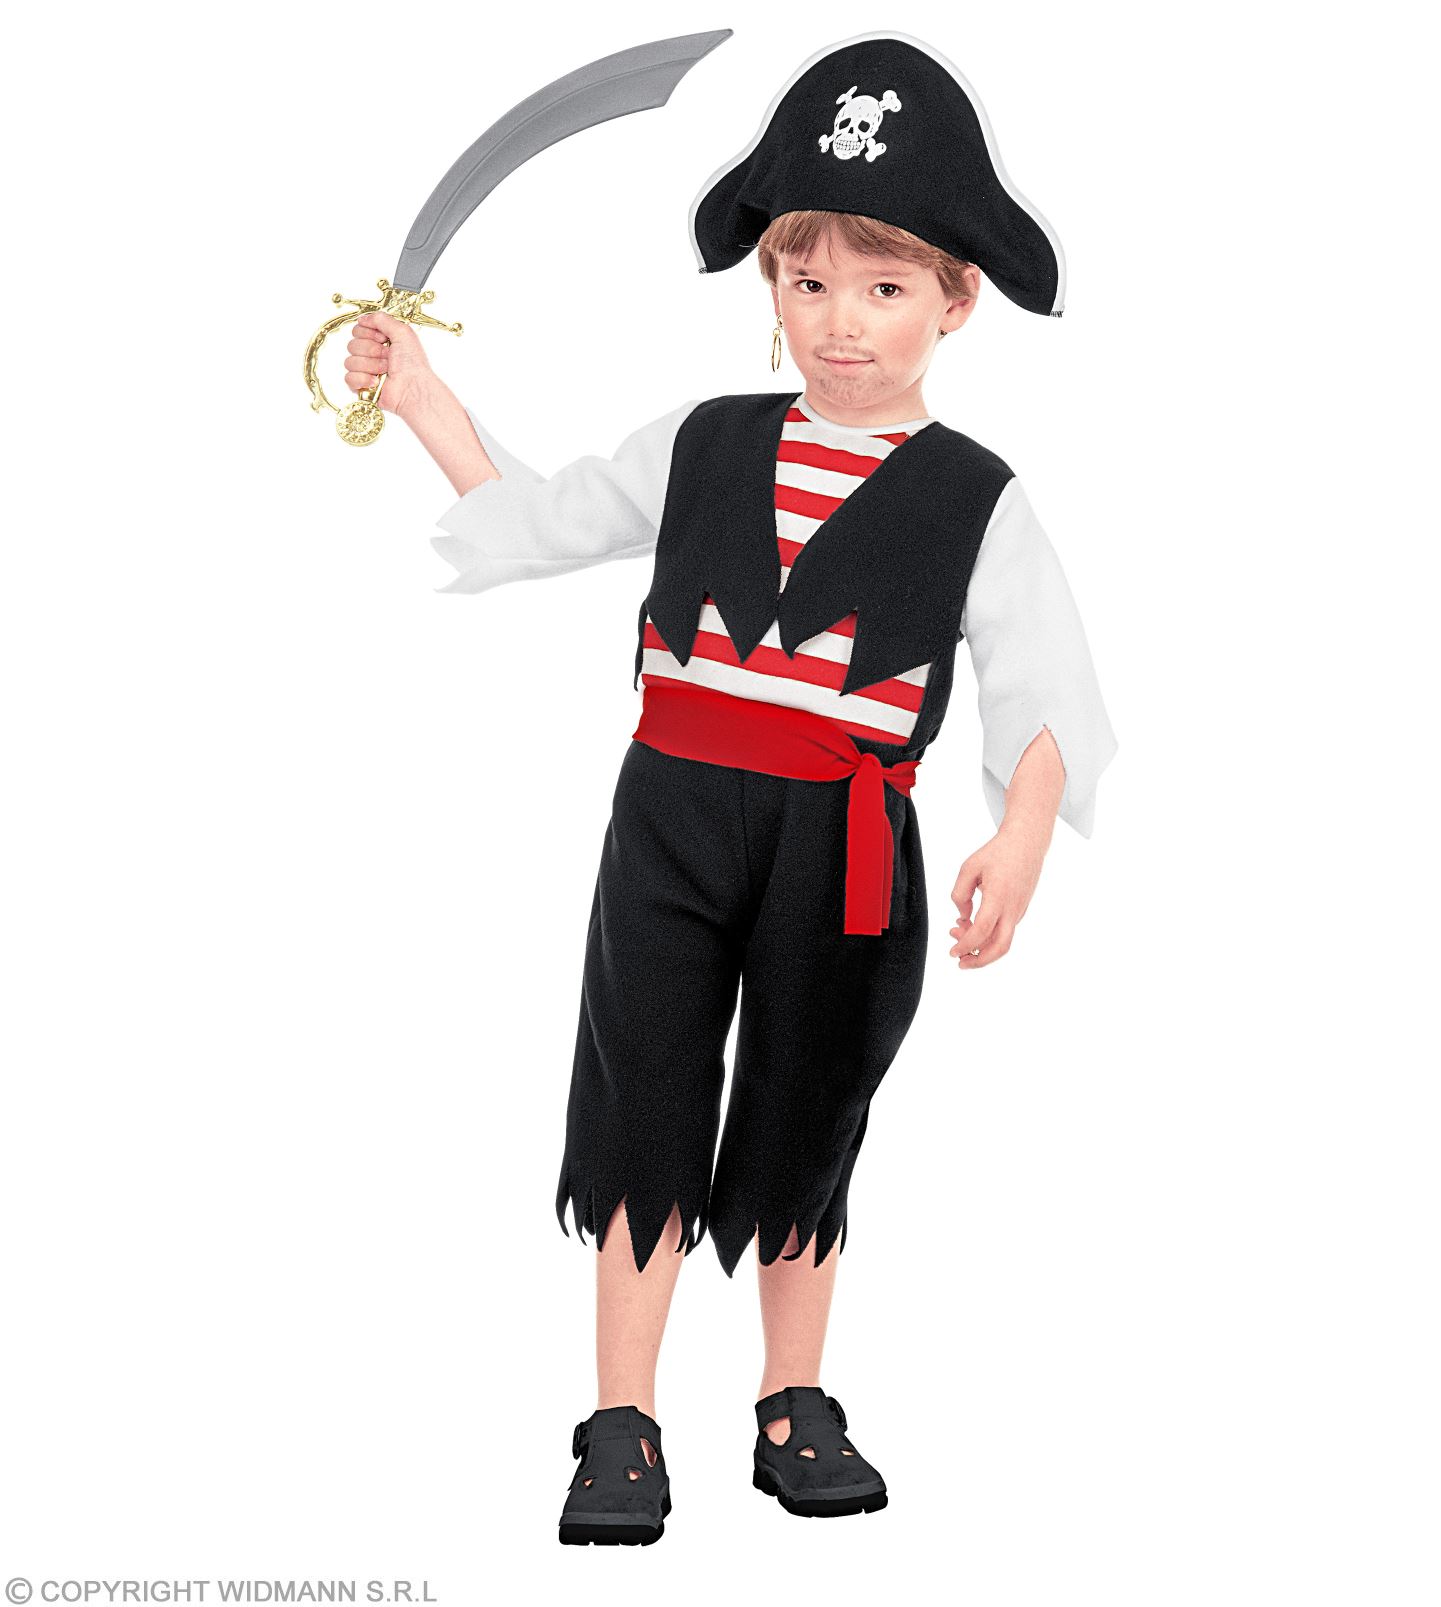 Kinderkofferset Piraten Piratenset Kinder Piratenkostüm Verkleidung 